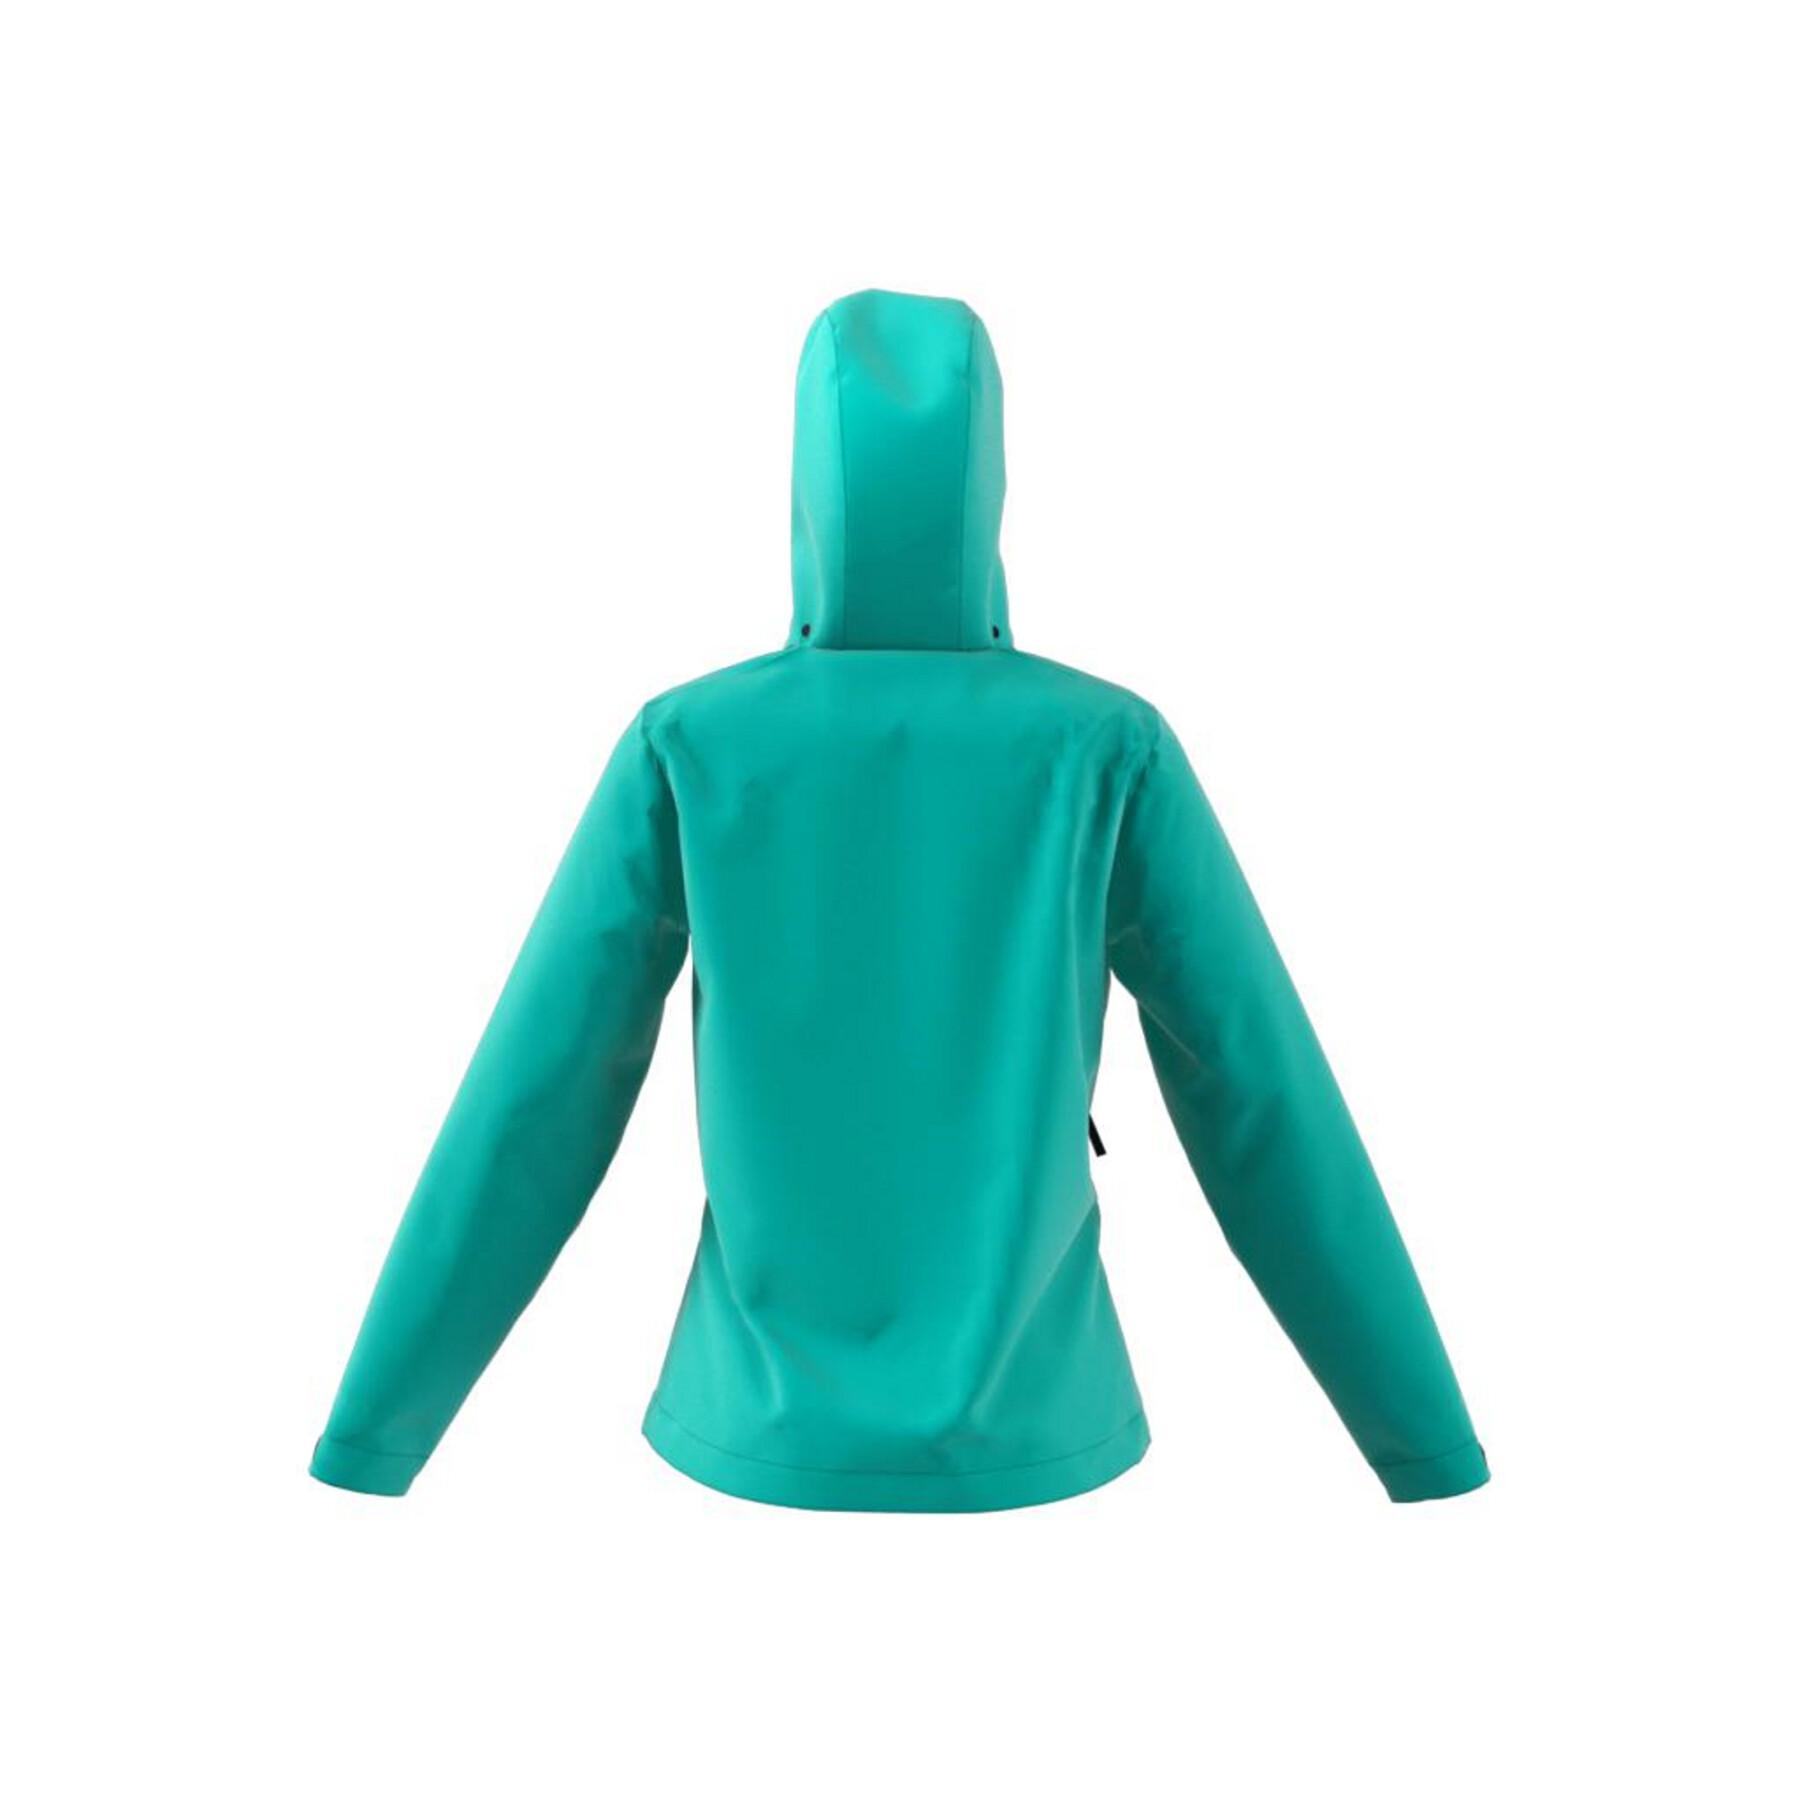 Women's rain jacket adidas Terrex Primegreen